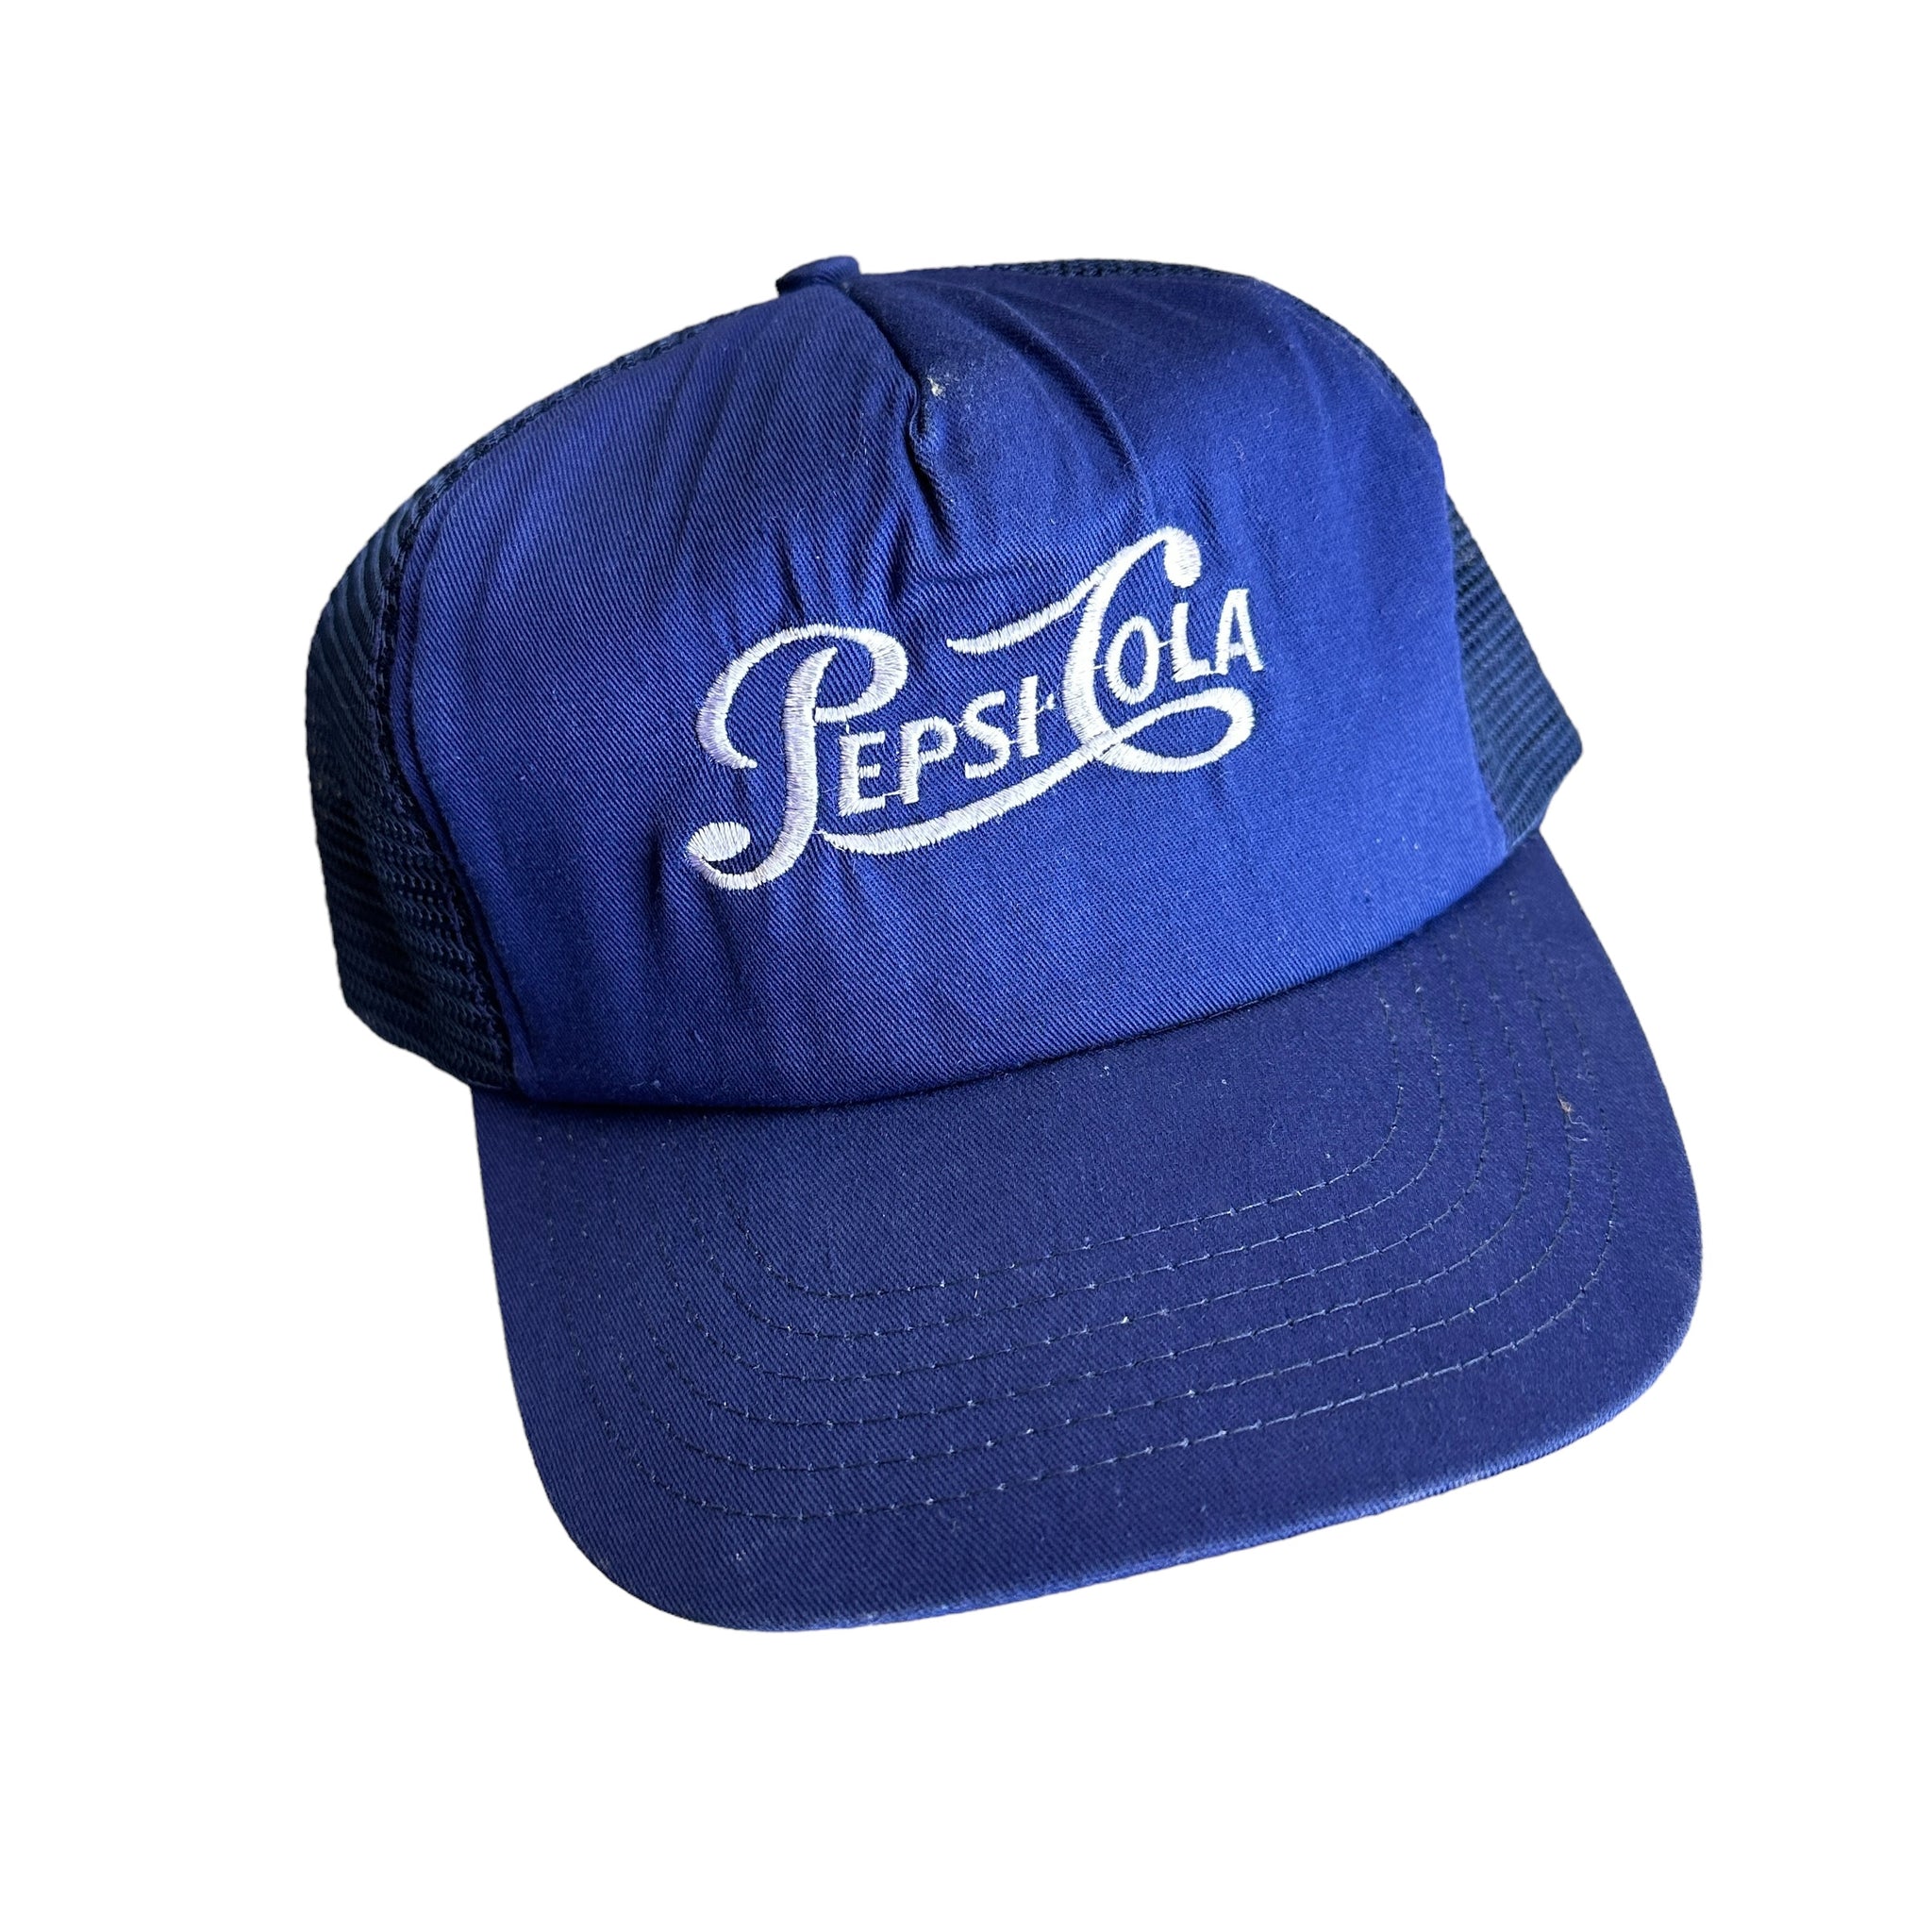 80s Pepsi trucker hat